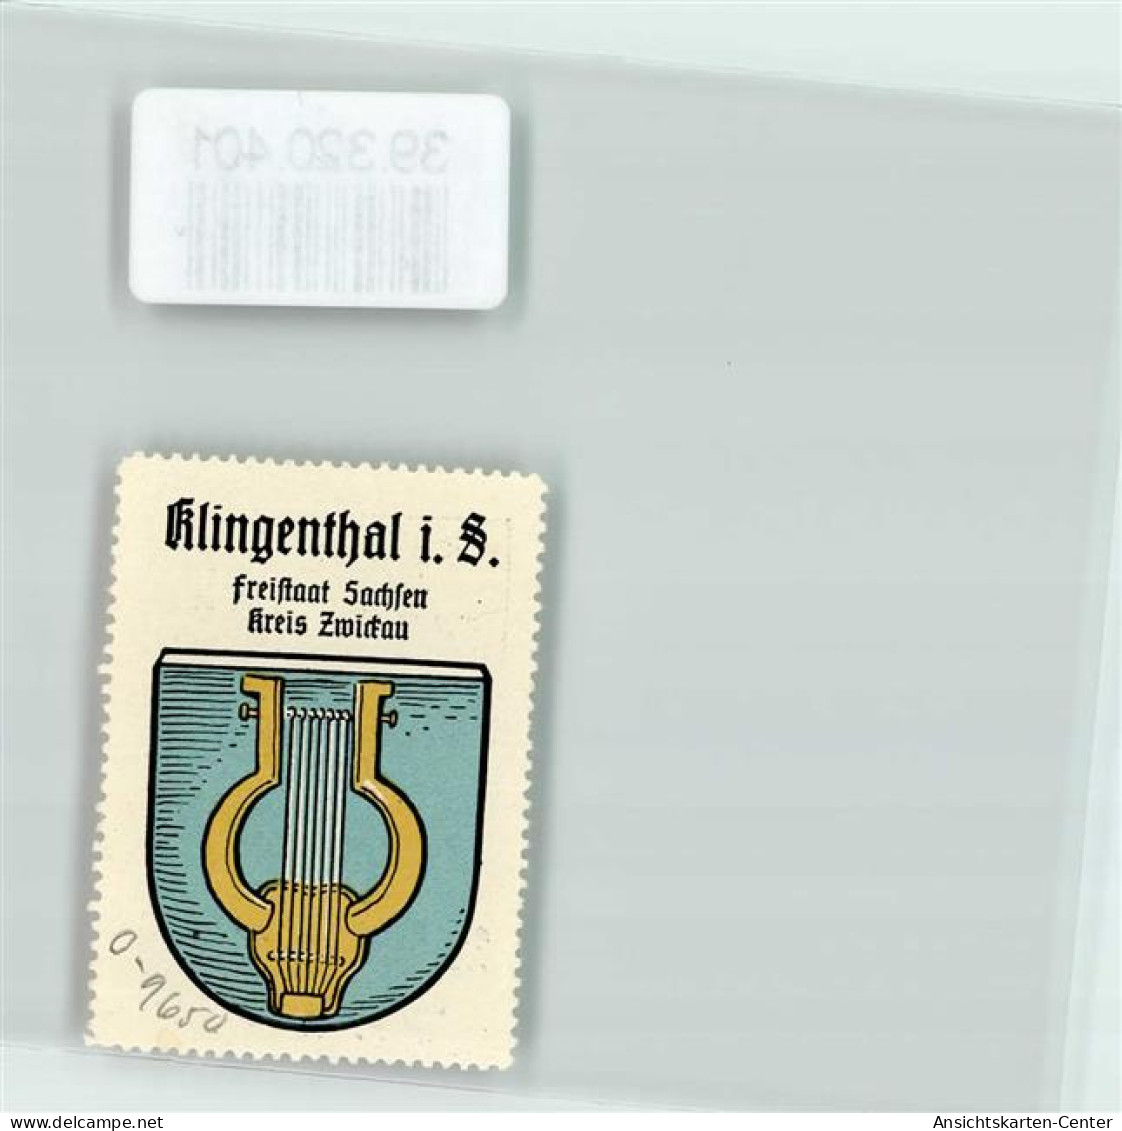 39320401 - Klingenthal - Klingenthal